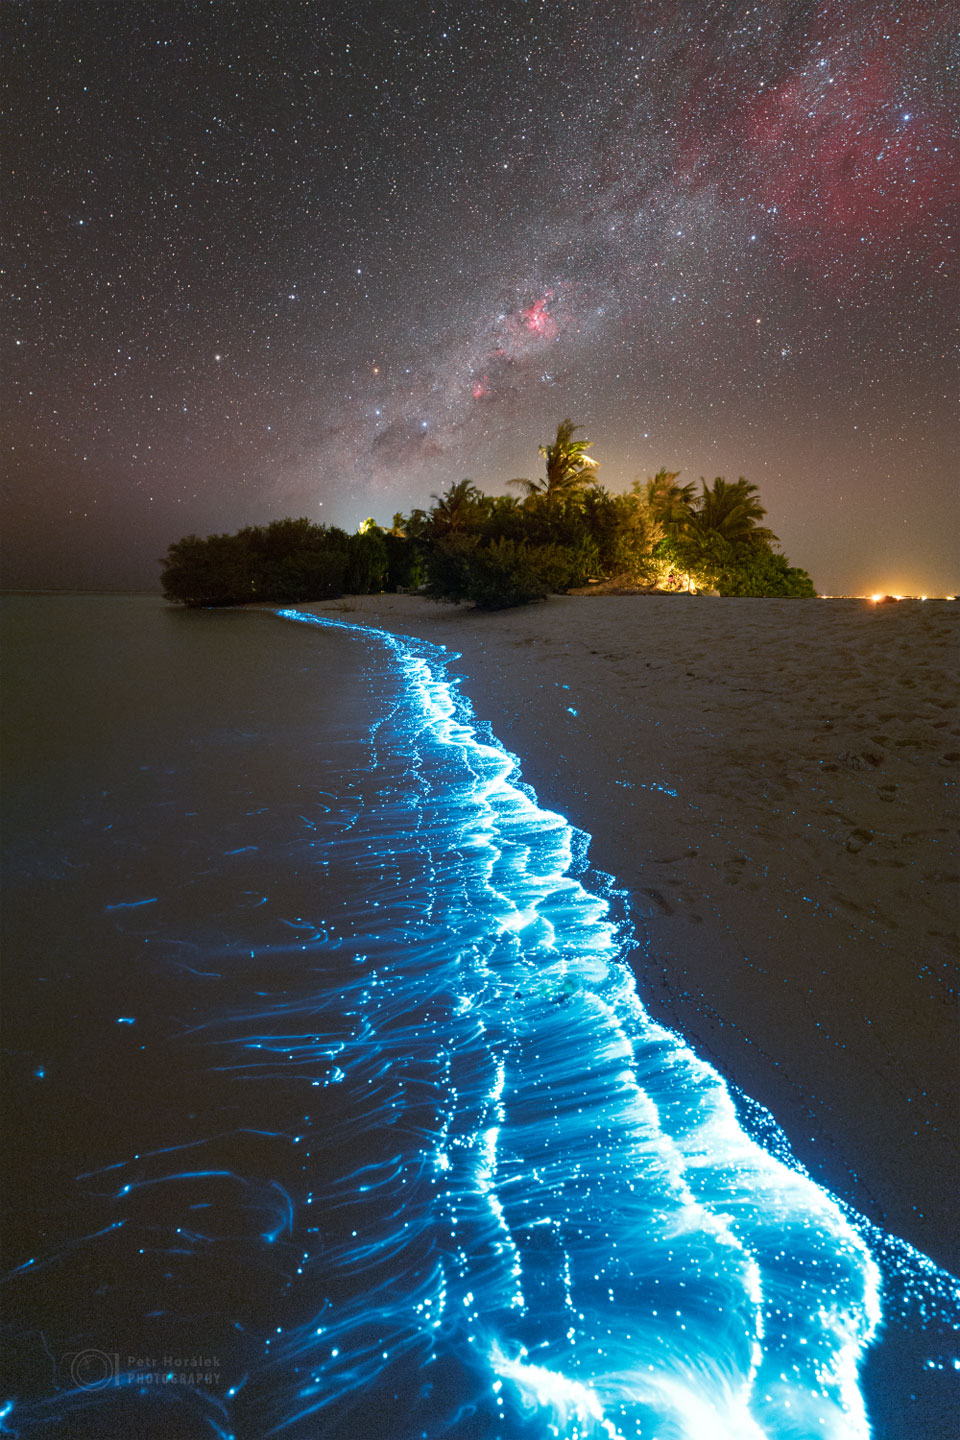 Das Bild zeigt eine Küstenlinie mit blau leuchtendem Plankton. In der Ferne stehen Bäume. Darüber befindet sich ein Sternenhimmel mit roten Nebeln und dem zentralen Band unserer Milchstraßengalaxie.